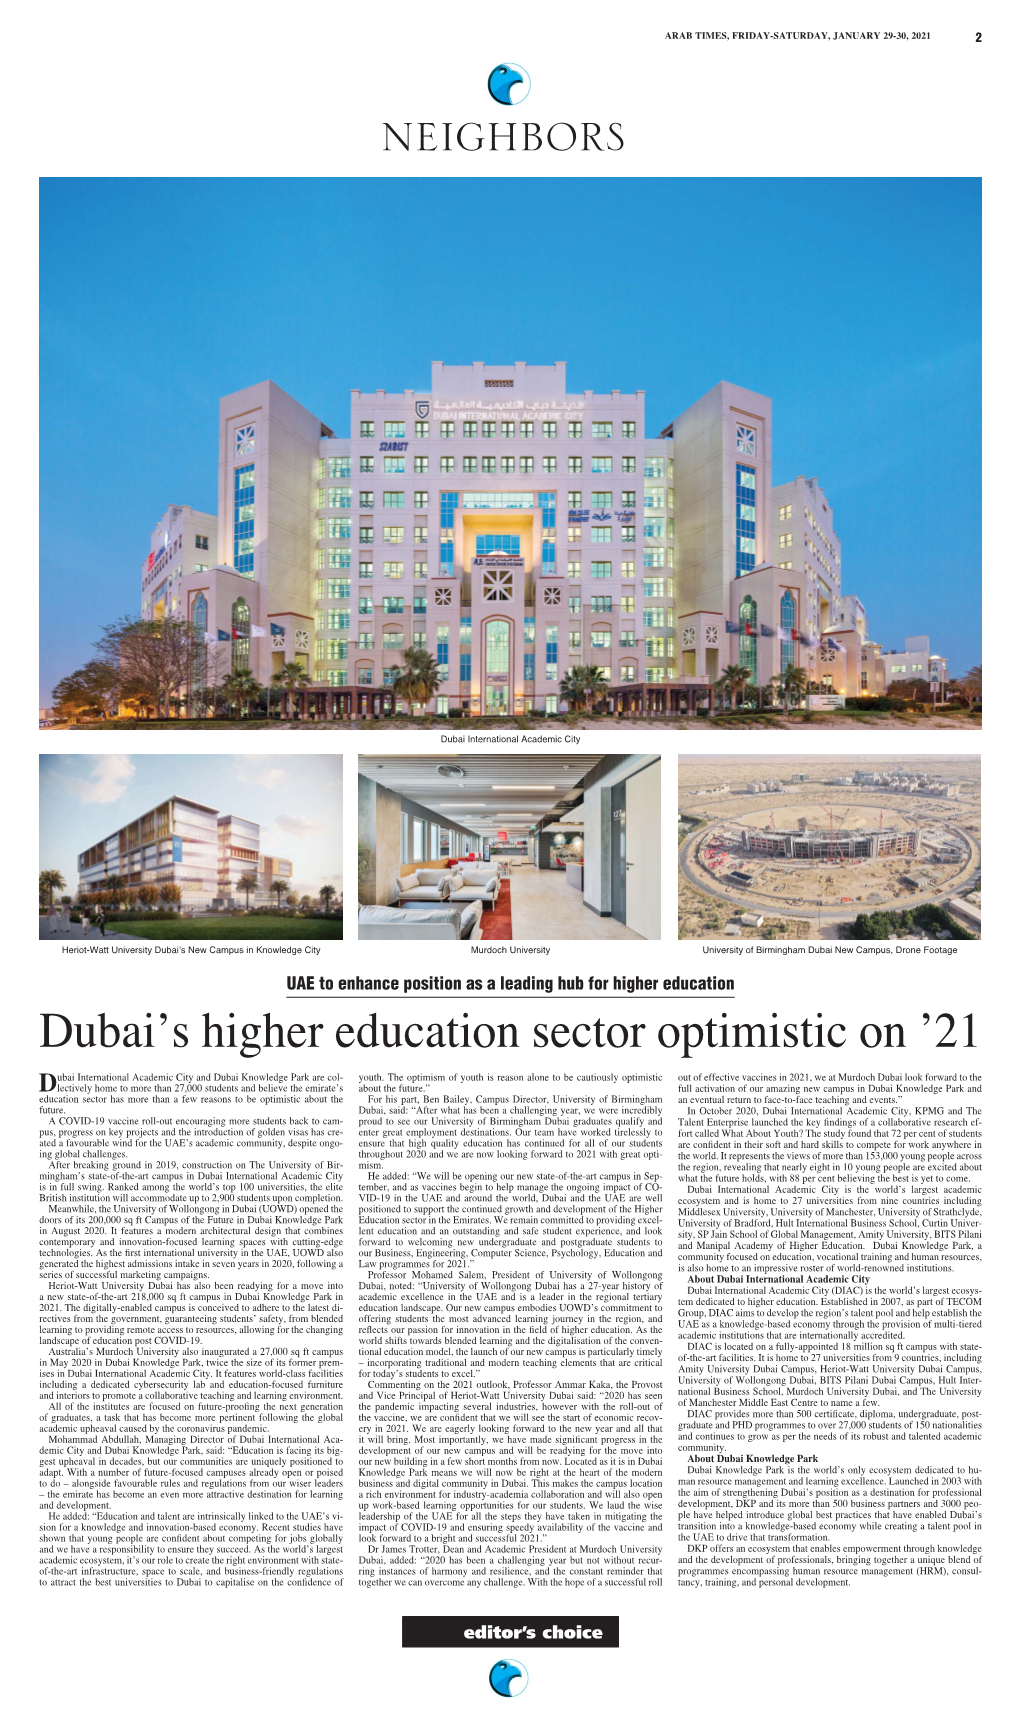 Dubai's Higher Education Sector Optimistic On